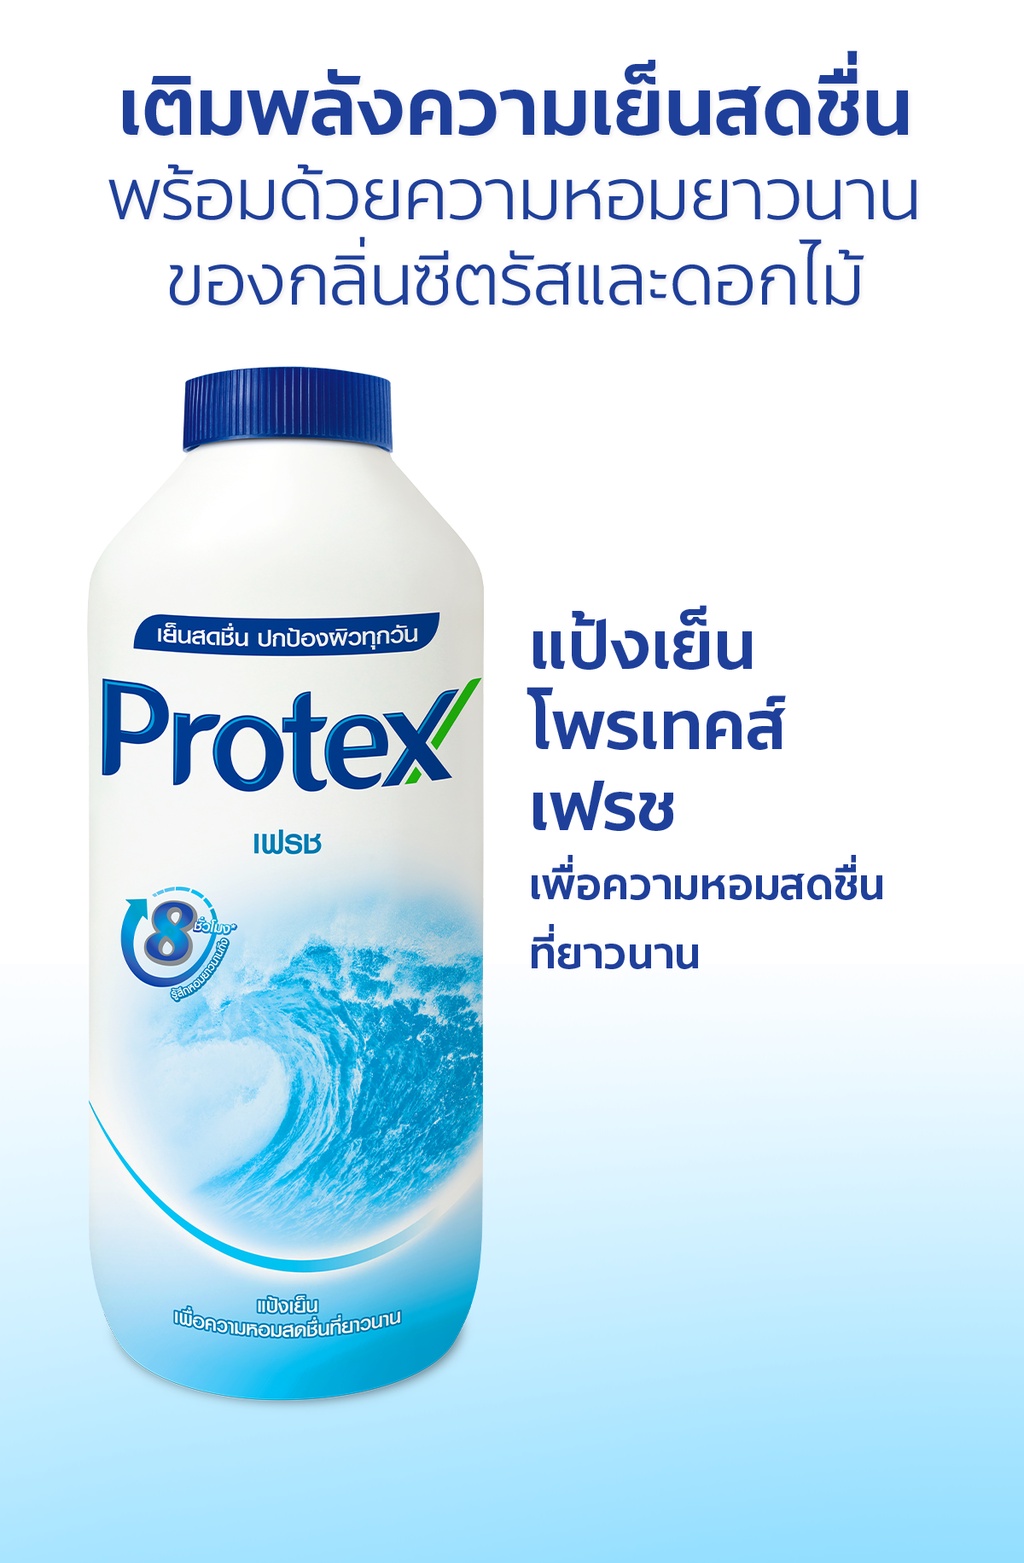 รูปภาพเพิ่มเติมเกี่ยวกับ Protex โพรเทคส์ เฟรช 280 กรัม รวม 2 ขวด (แป้งเย็น) Protex Talcum Powder Fresh 280g total 2 bottles